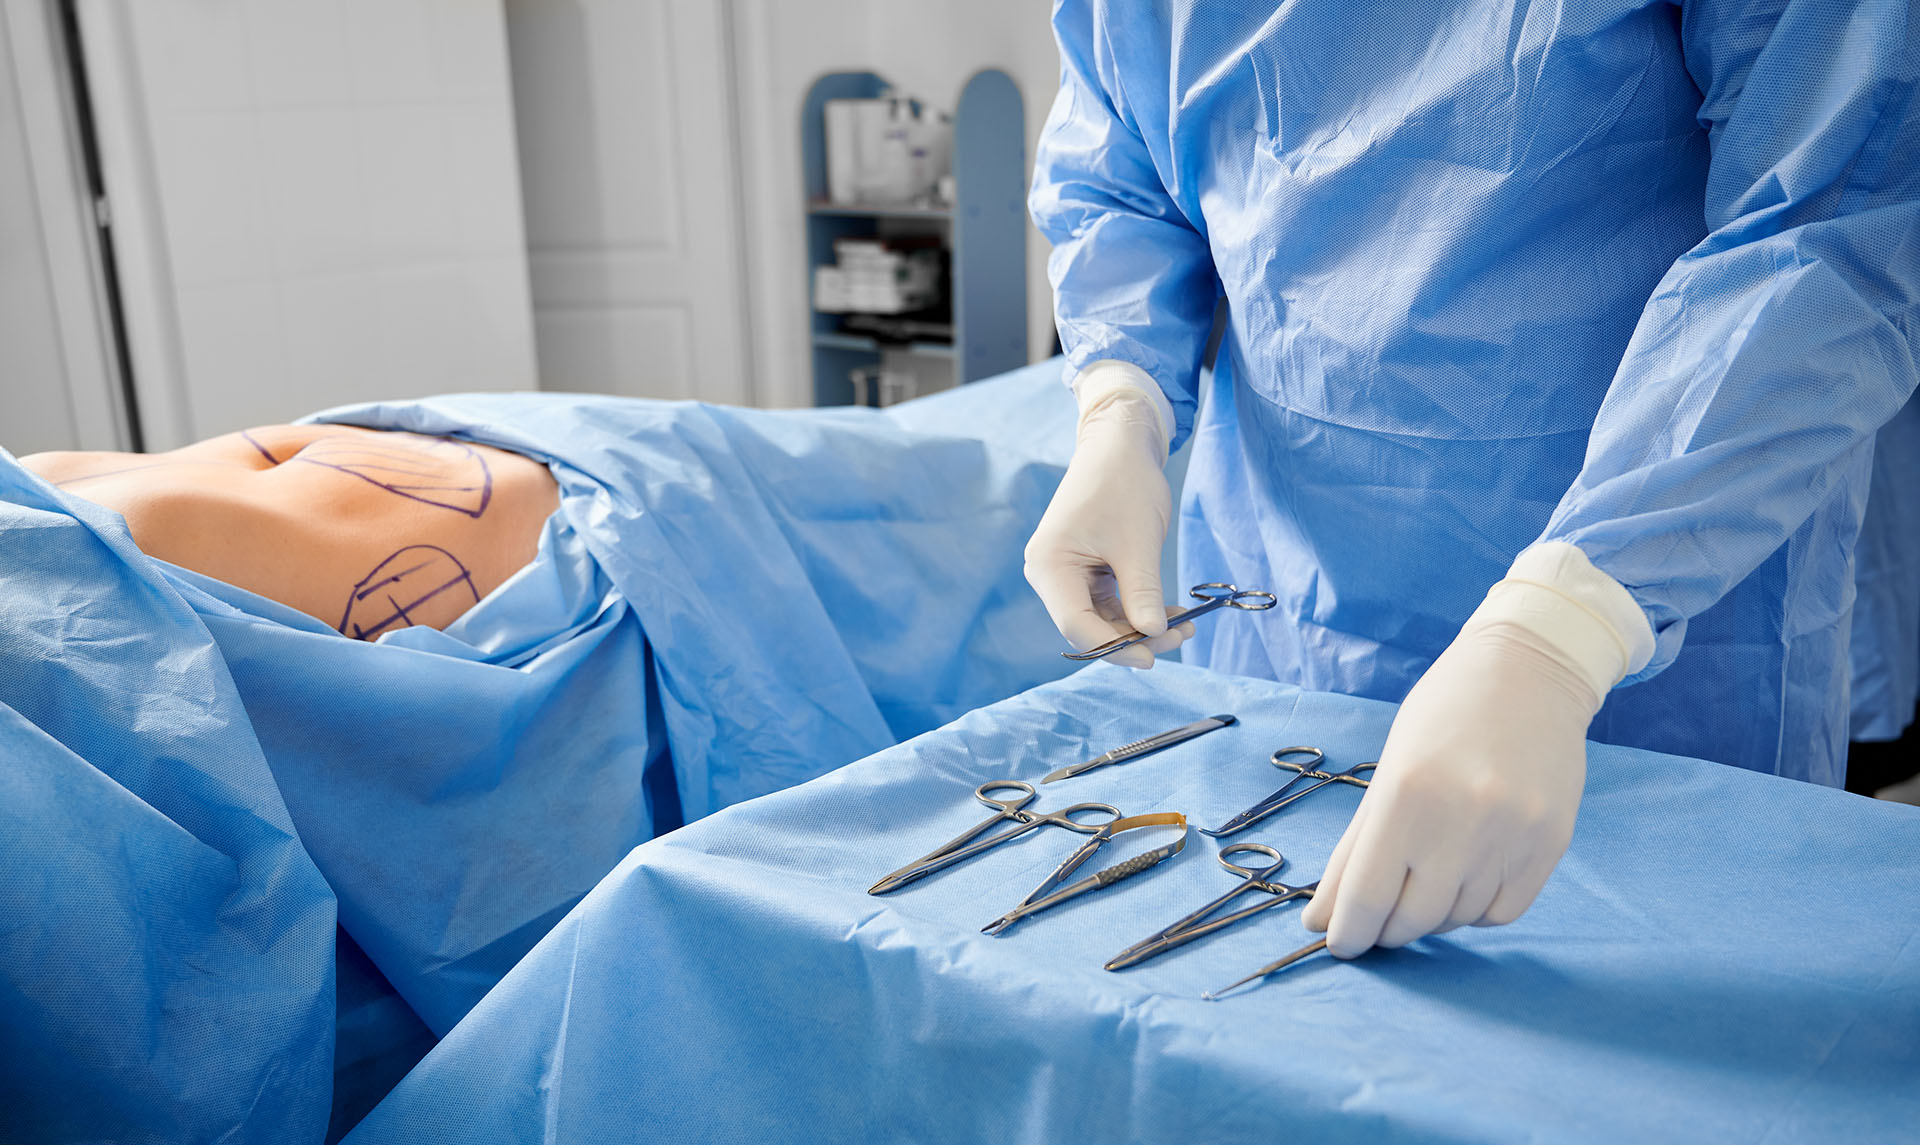 Chirurgien en gants stériles préparant des instruments médicaux,&nbsp;prêt à intervenir sur un patient. © Anatoliy_gleb, Adobe Stock